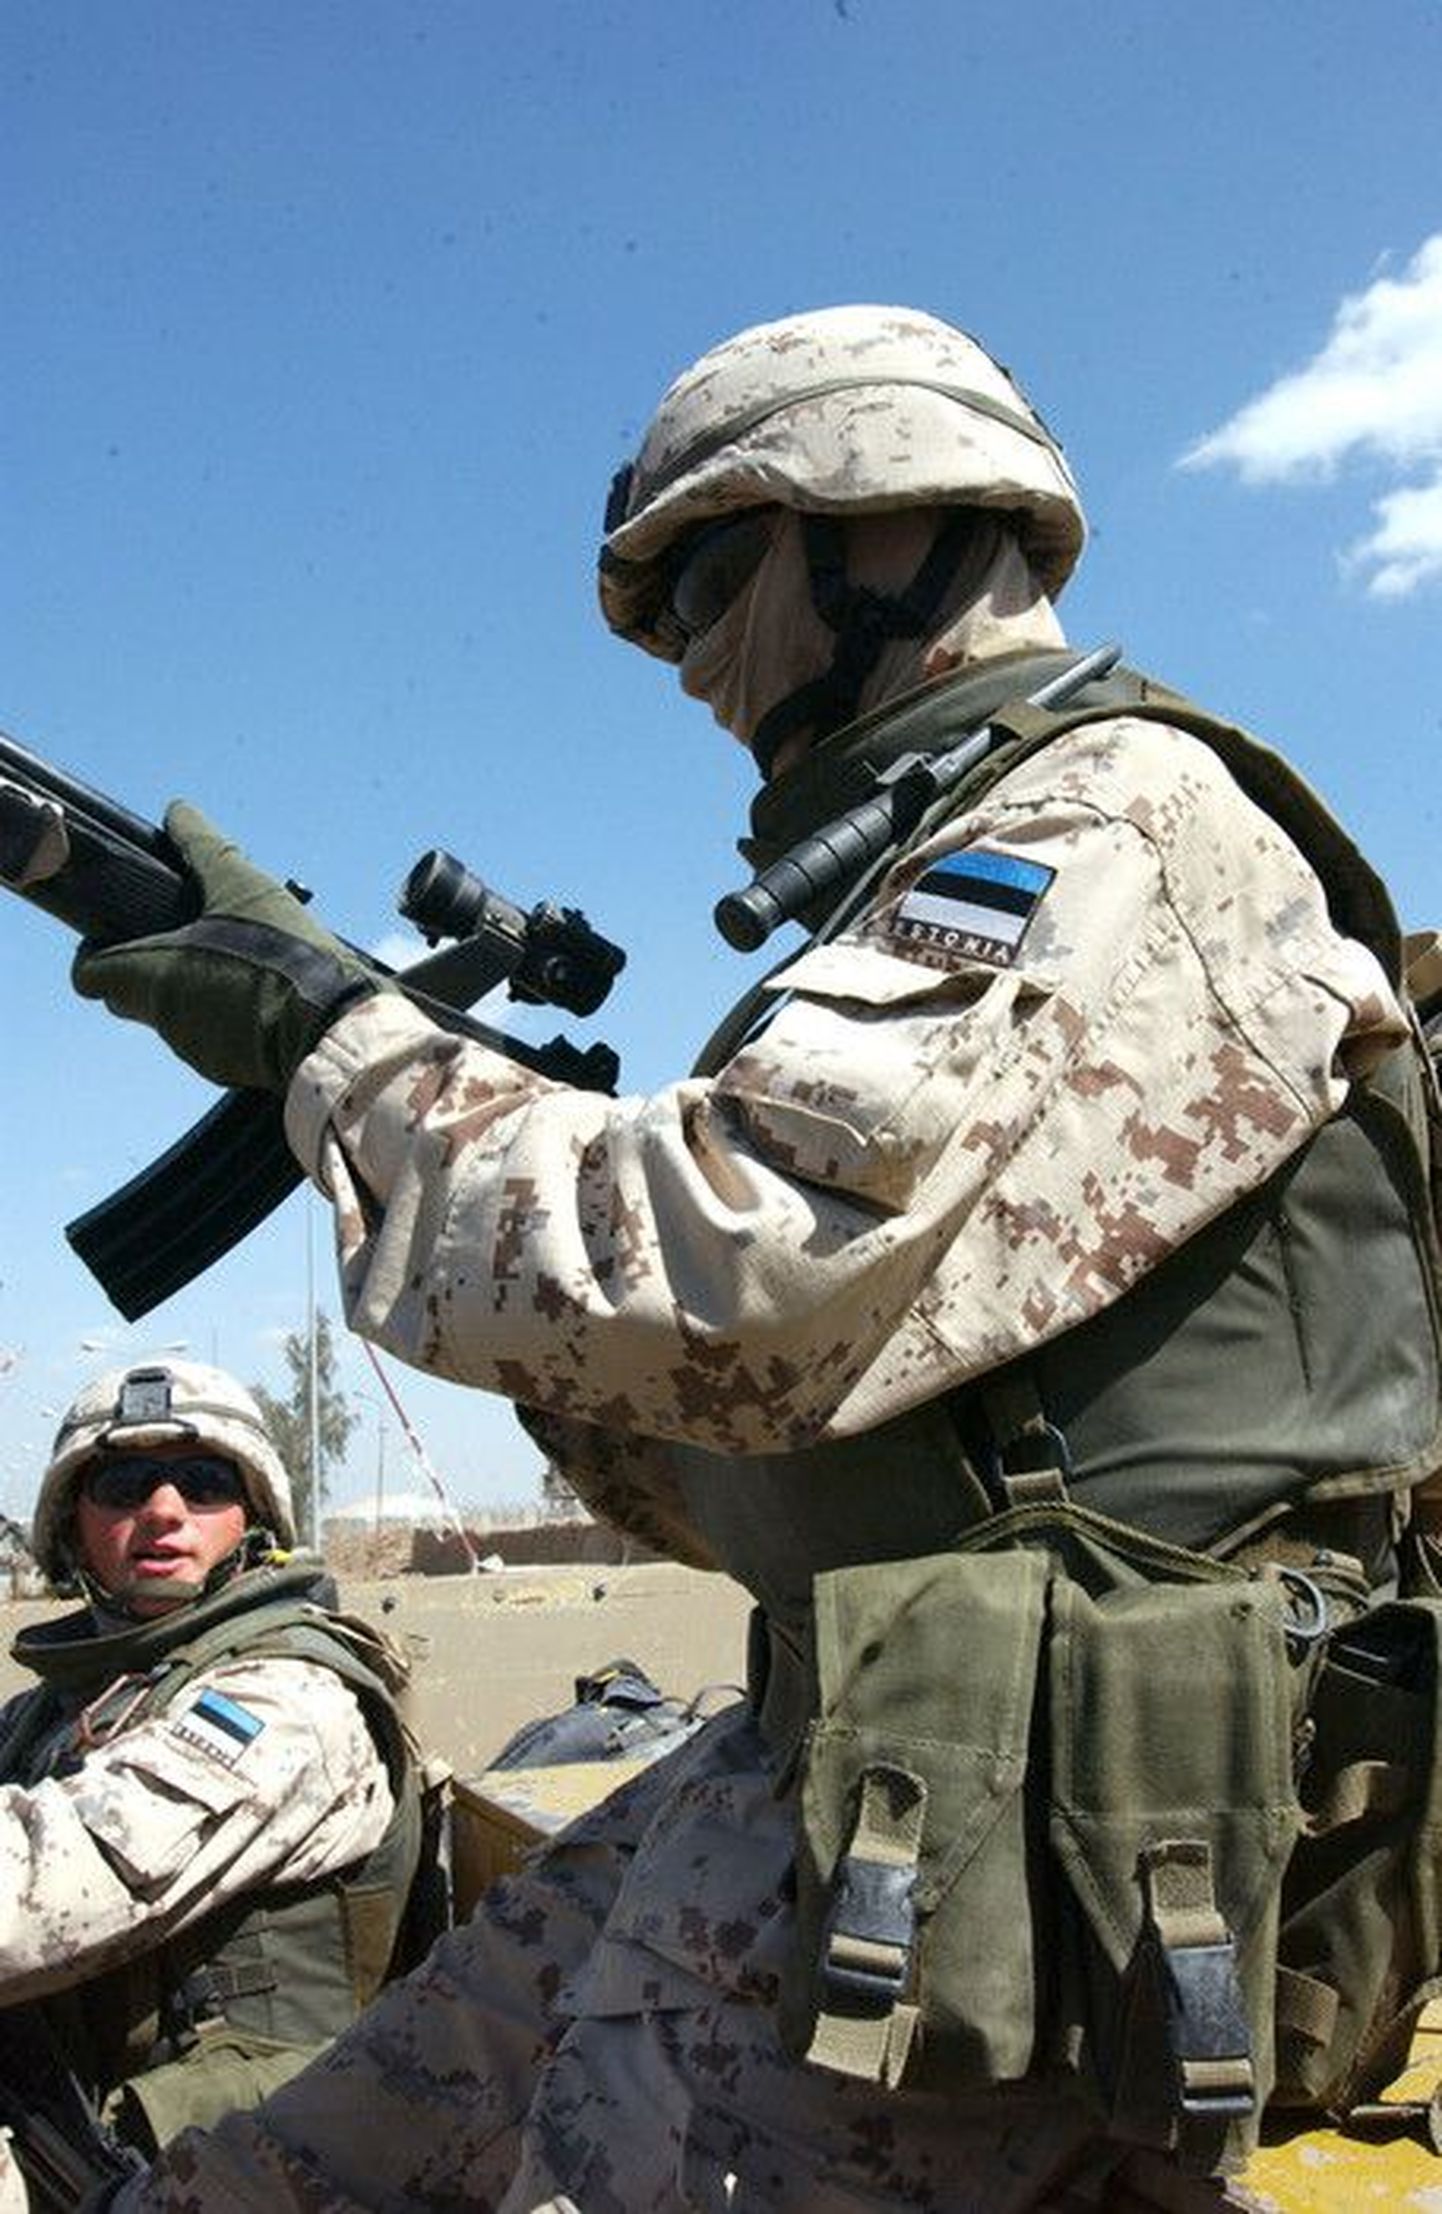 Iraagis on praegu väljaõppemissiooni raames kuus Eesti kaitseväelast. Pildil olevad kaitseväelased olid Iraagis missioonil 2006. aastal.